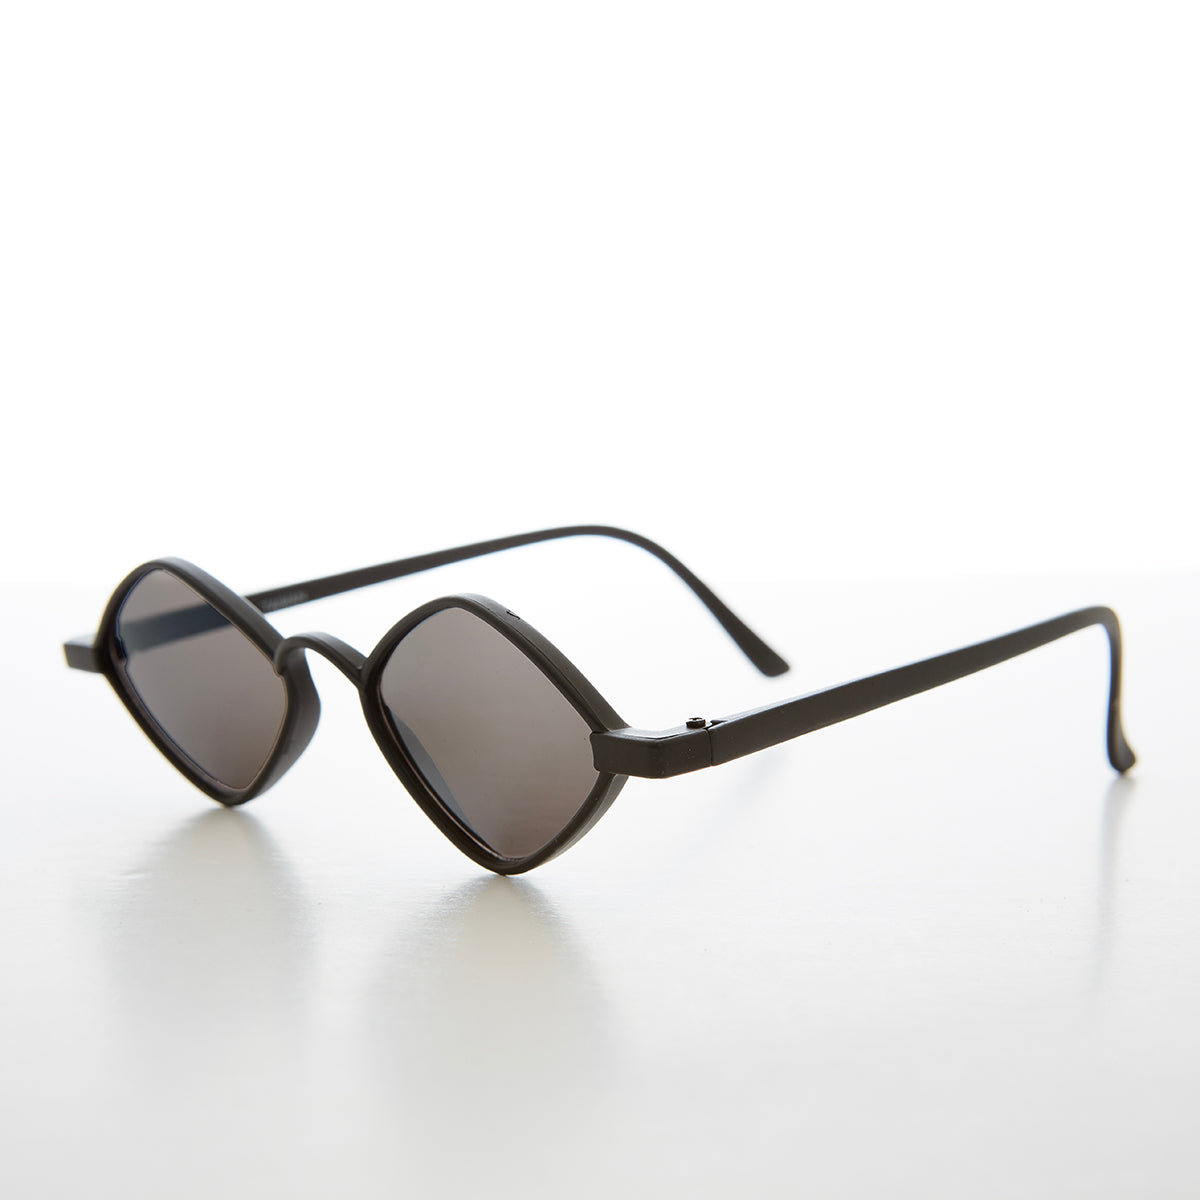 Diamond Shape Vintage Sunglasses